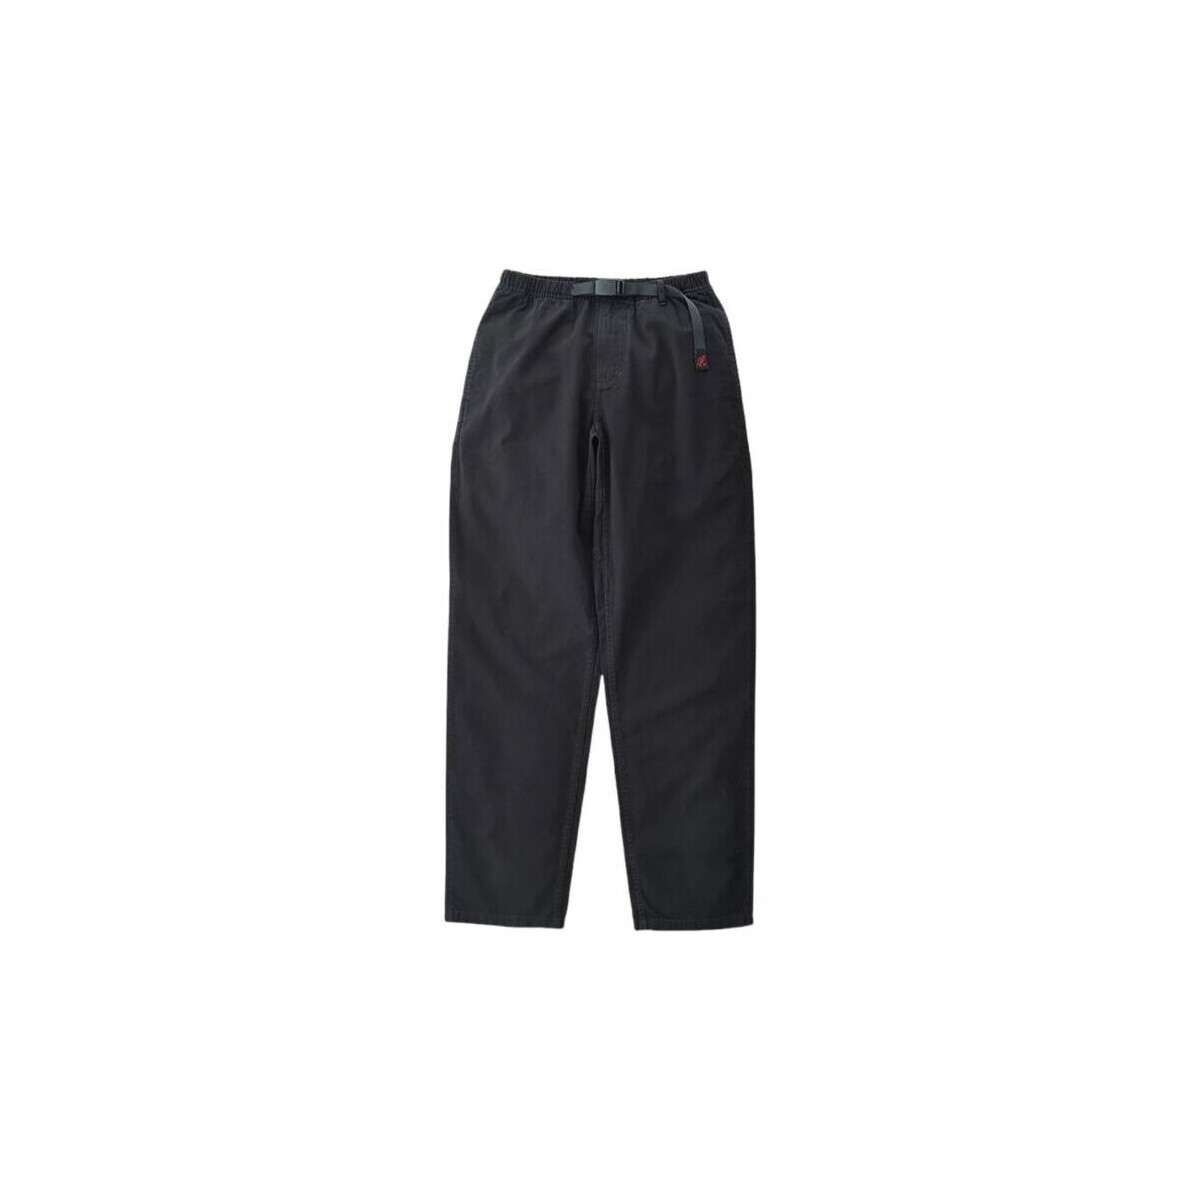 Abbigliamento Uomo Shorts / Bermuda Gramicci Pantaloni  Uomo Black Nero